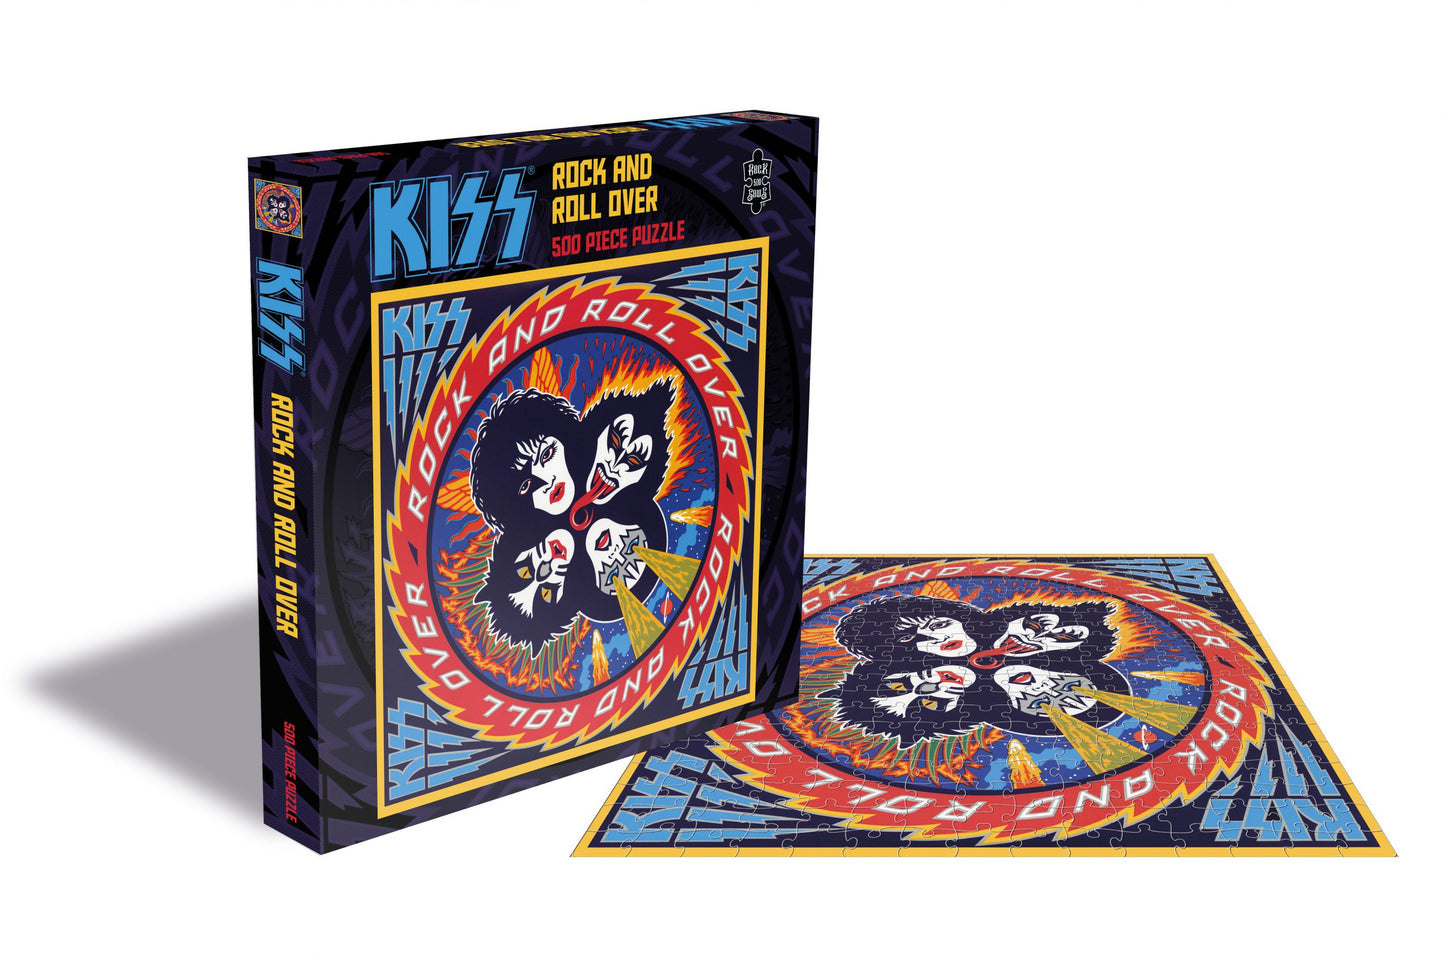 Kiss - Rock and Roll Over, puzzel van 500 stukjes